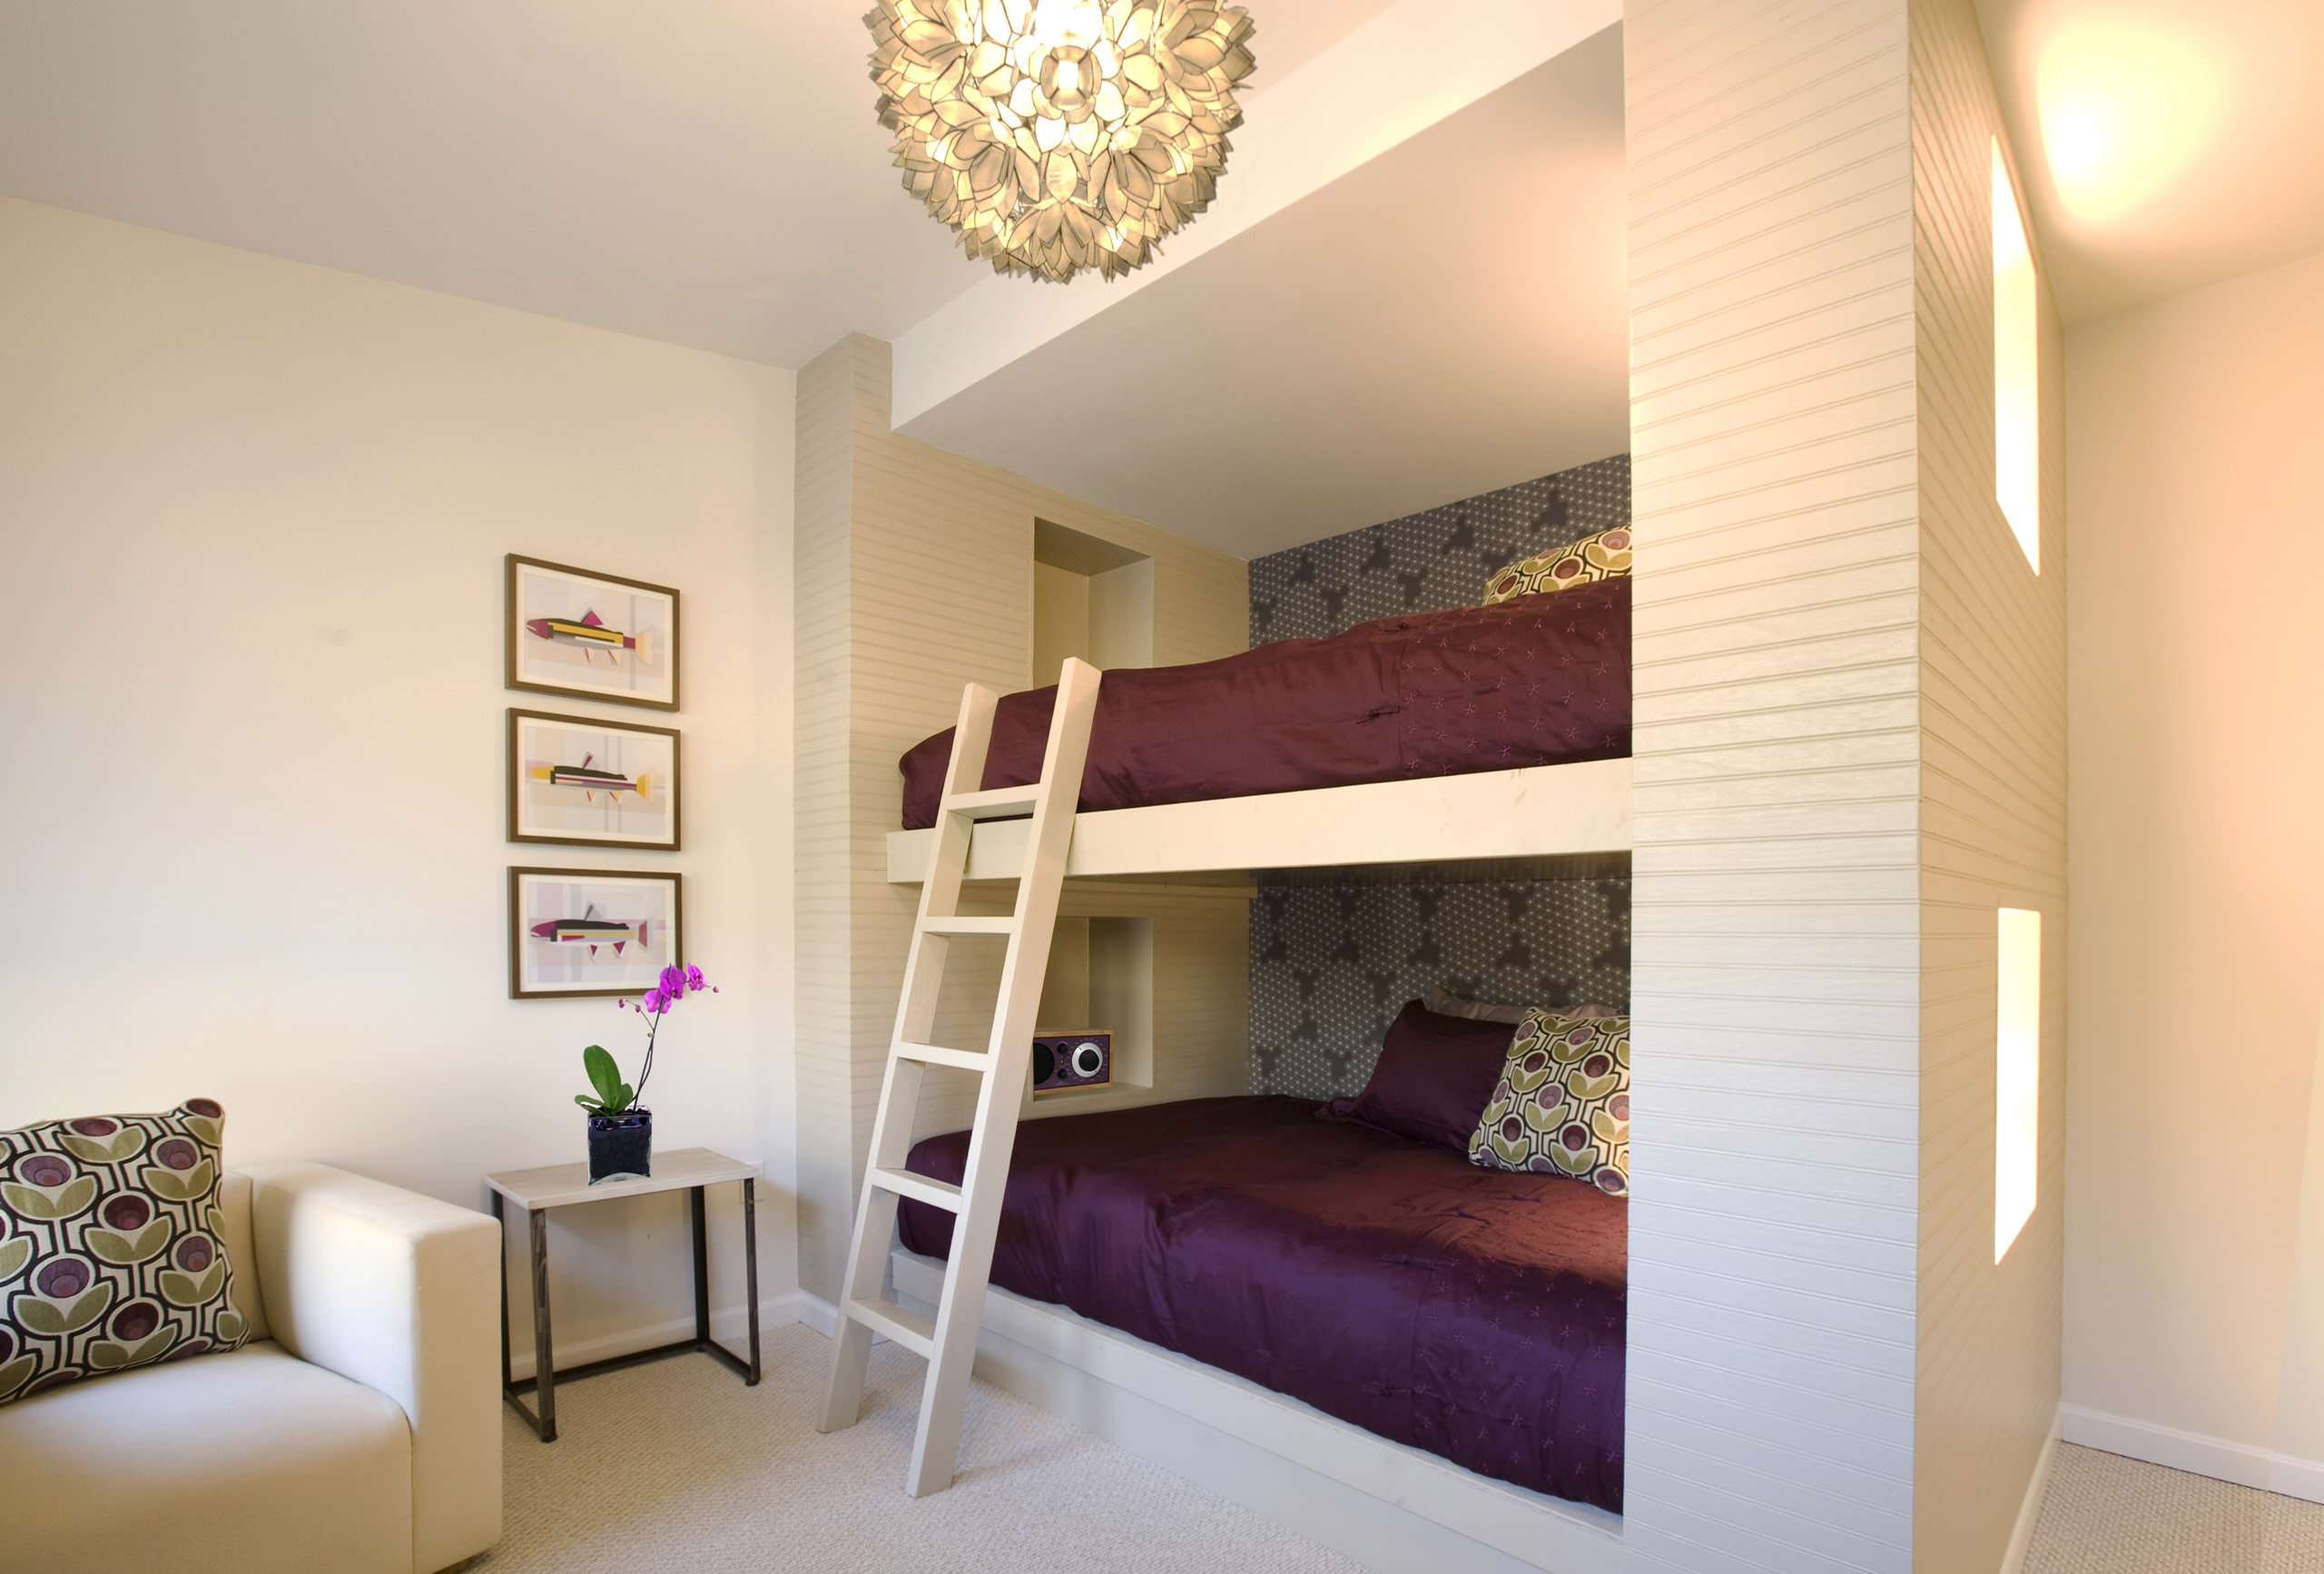 Детская комната с двухъярусной кроватью: преимущества многофункциональной мебели - 27 фото